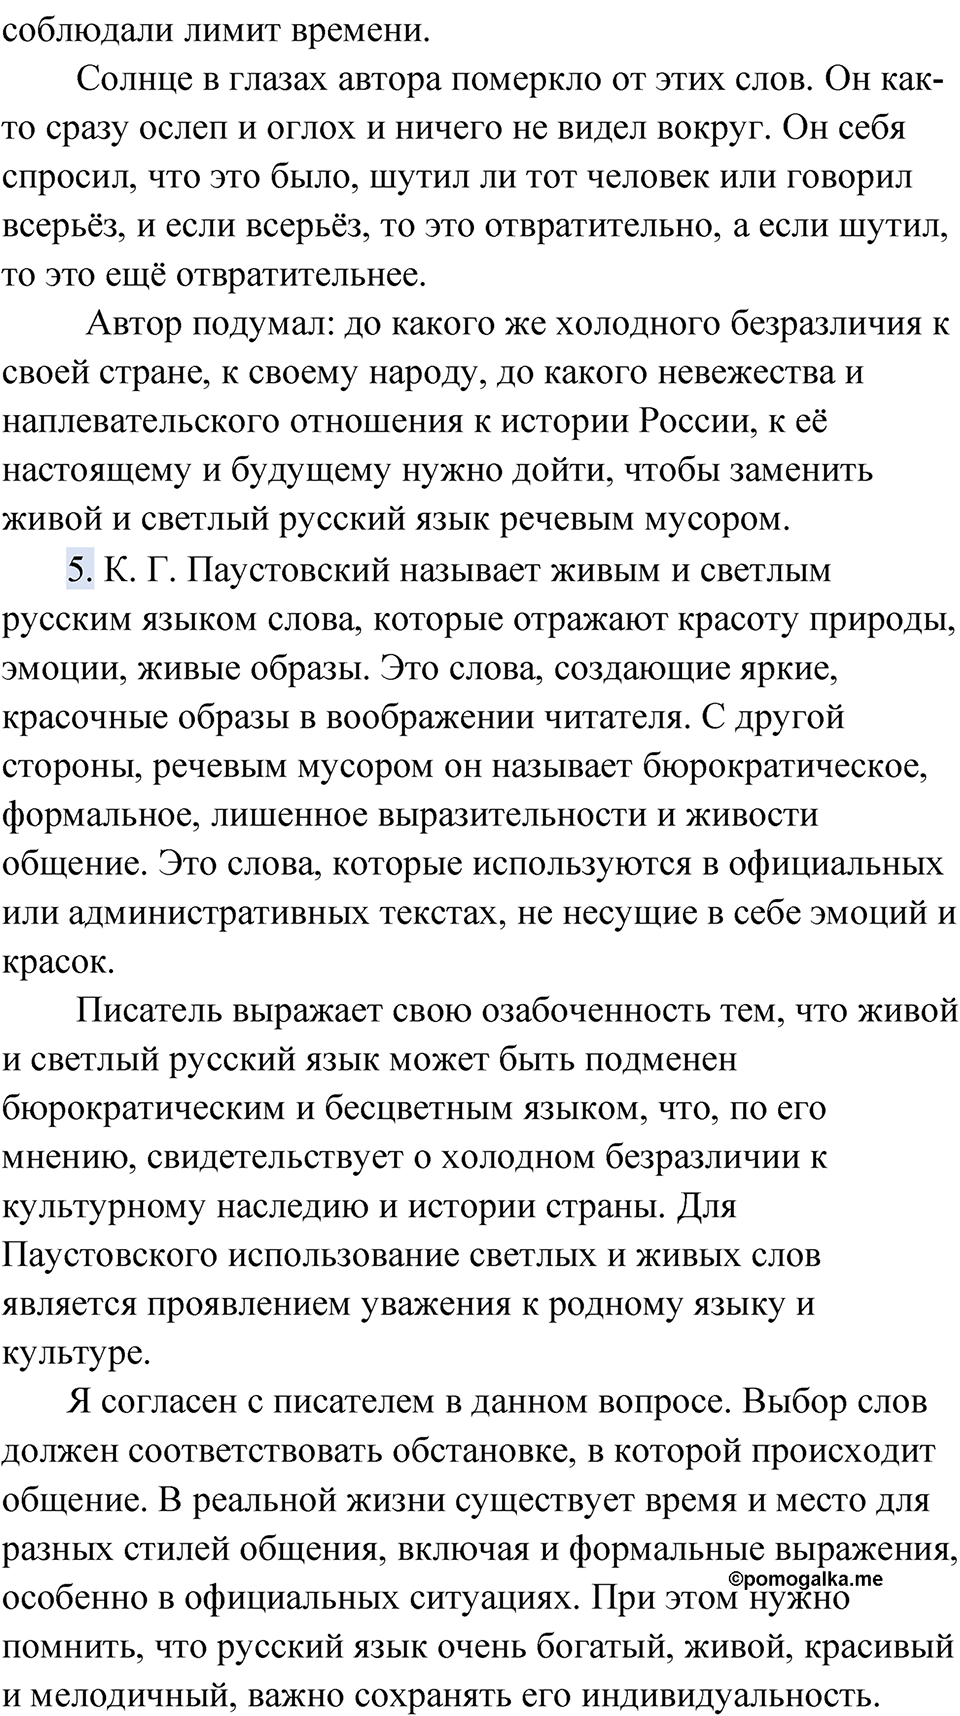 страница 59 упражнение 43 русский язык 9 класс Быстрова 2 часть 2022 год